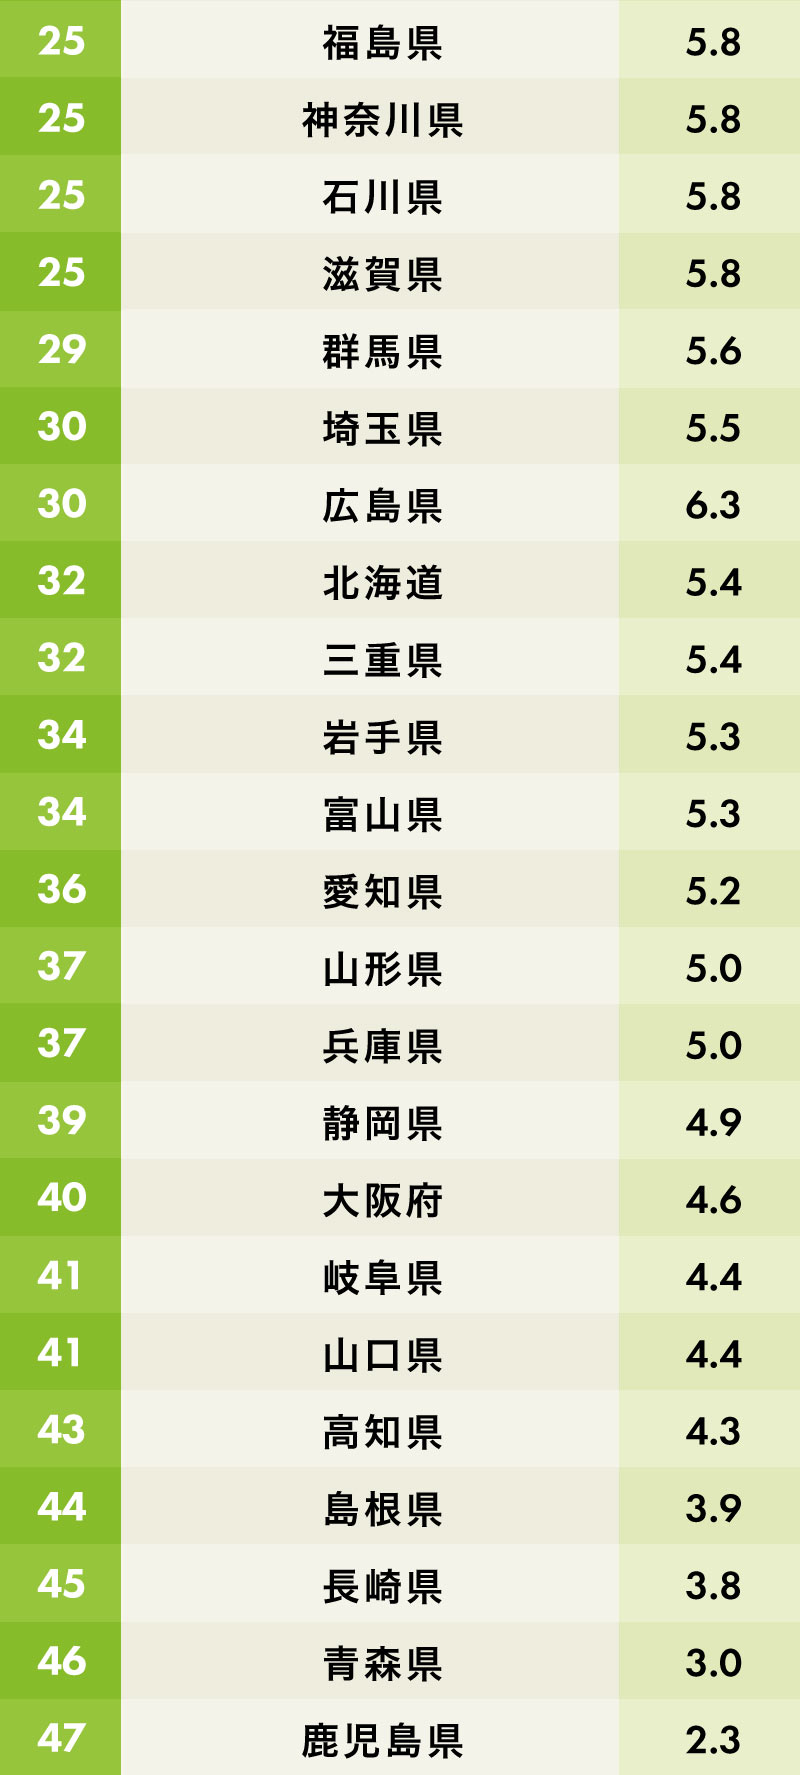 交通マナーの悪さに悩む都道府県ランキング 25位～47位